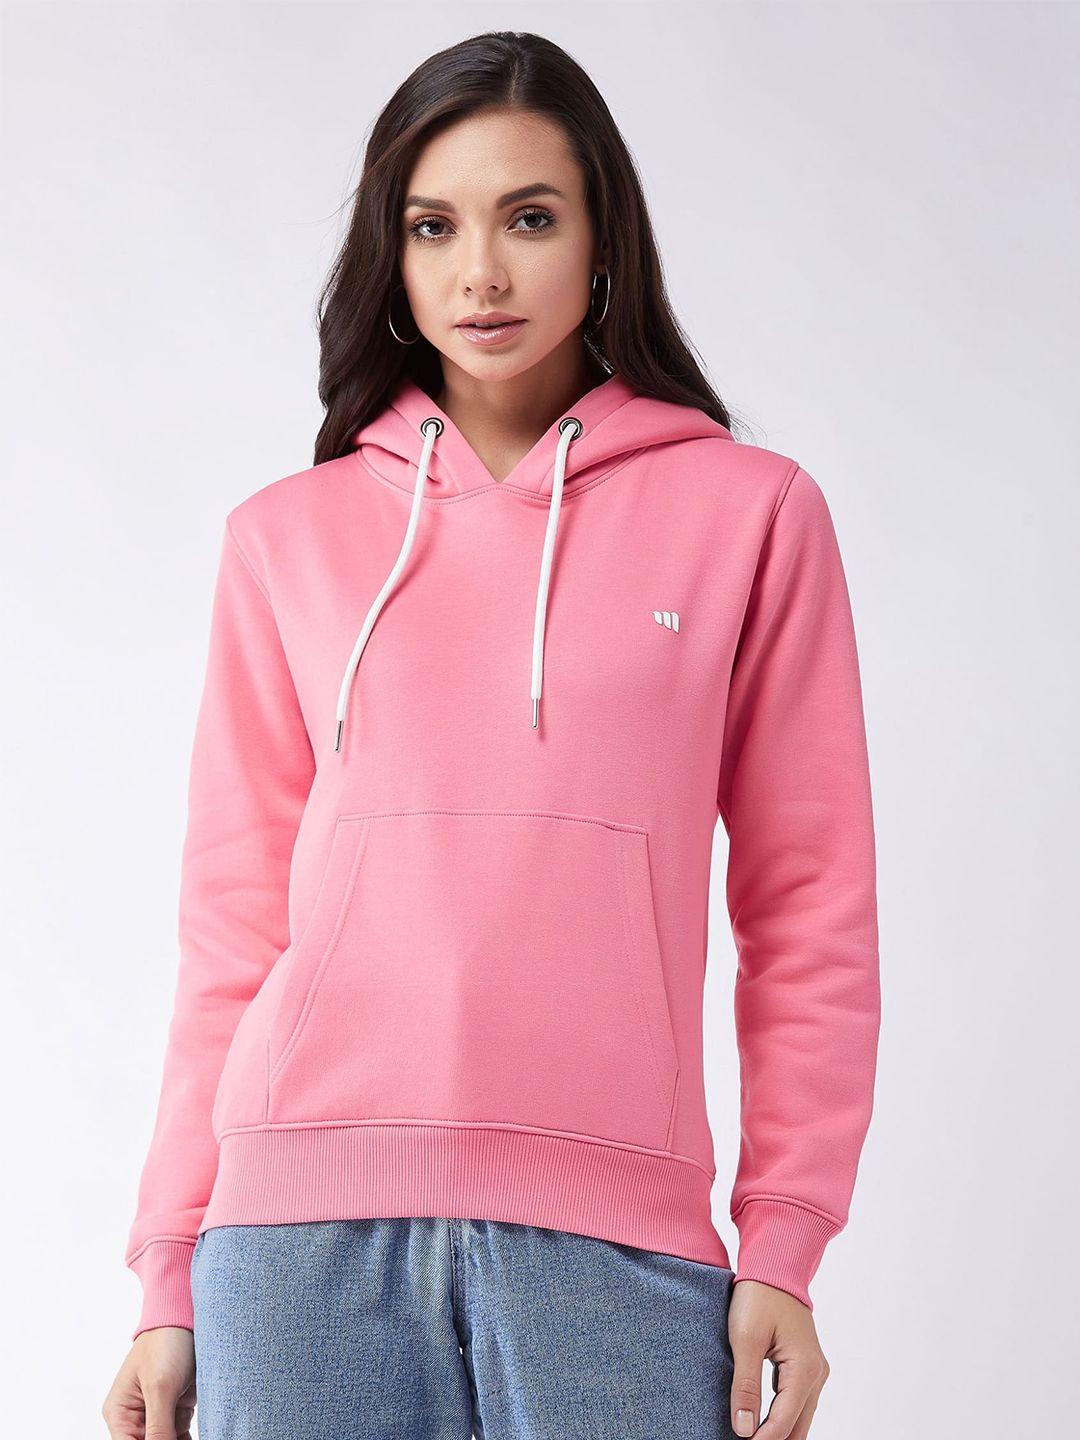 modeve women pink hooded sweatshirt